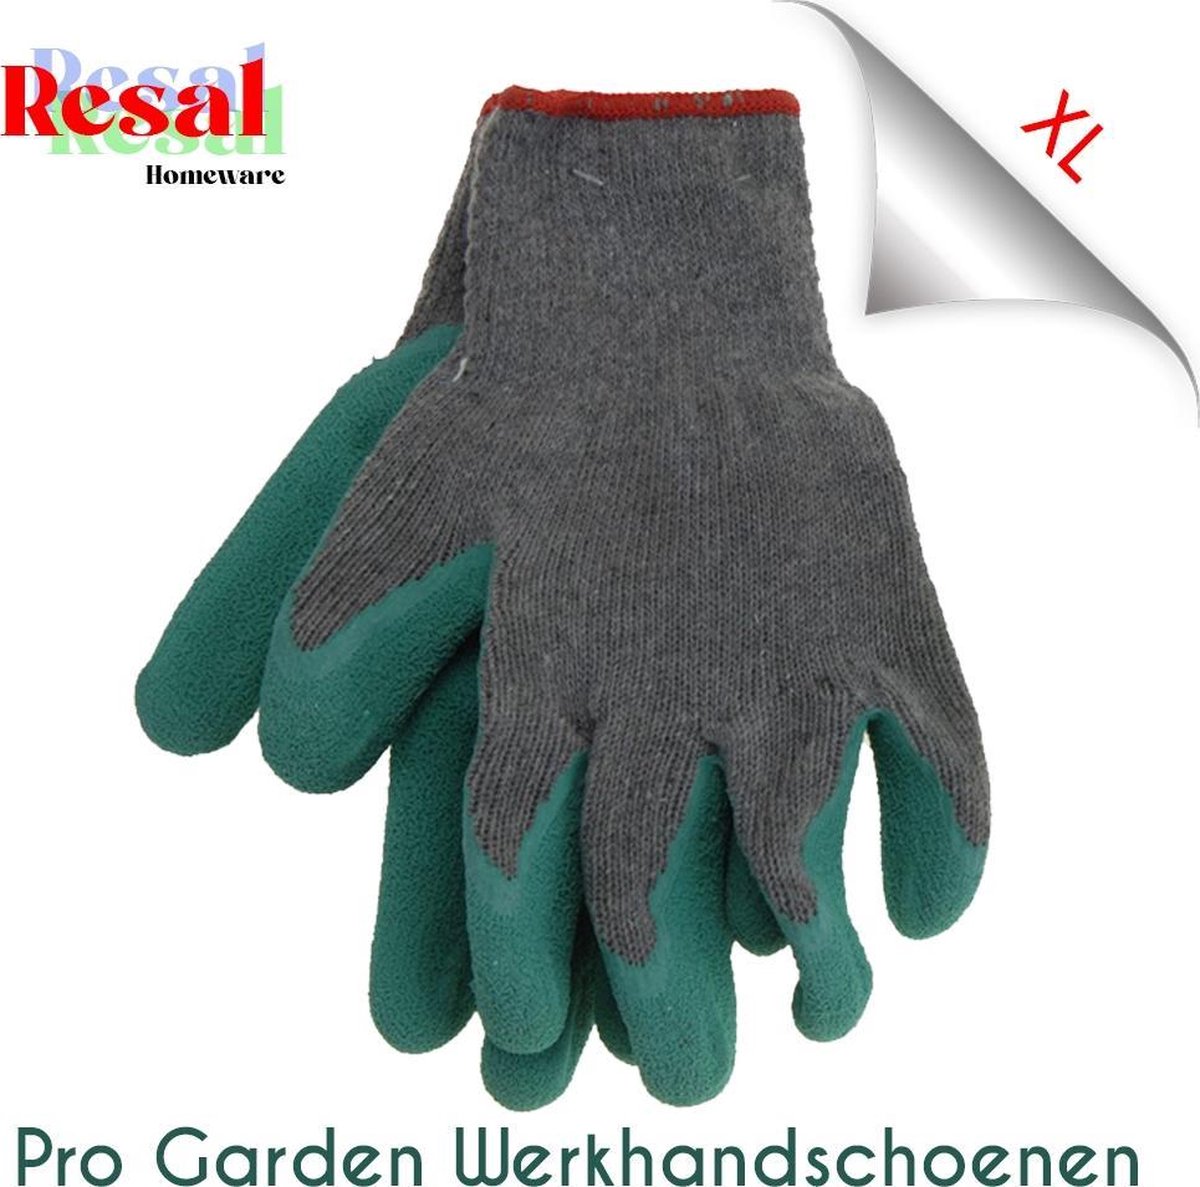 Resal Homeware Pro Garden Werkhandschoen Groen - Maat XL